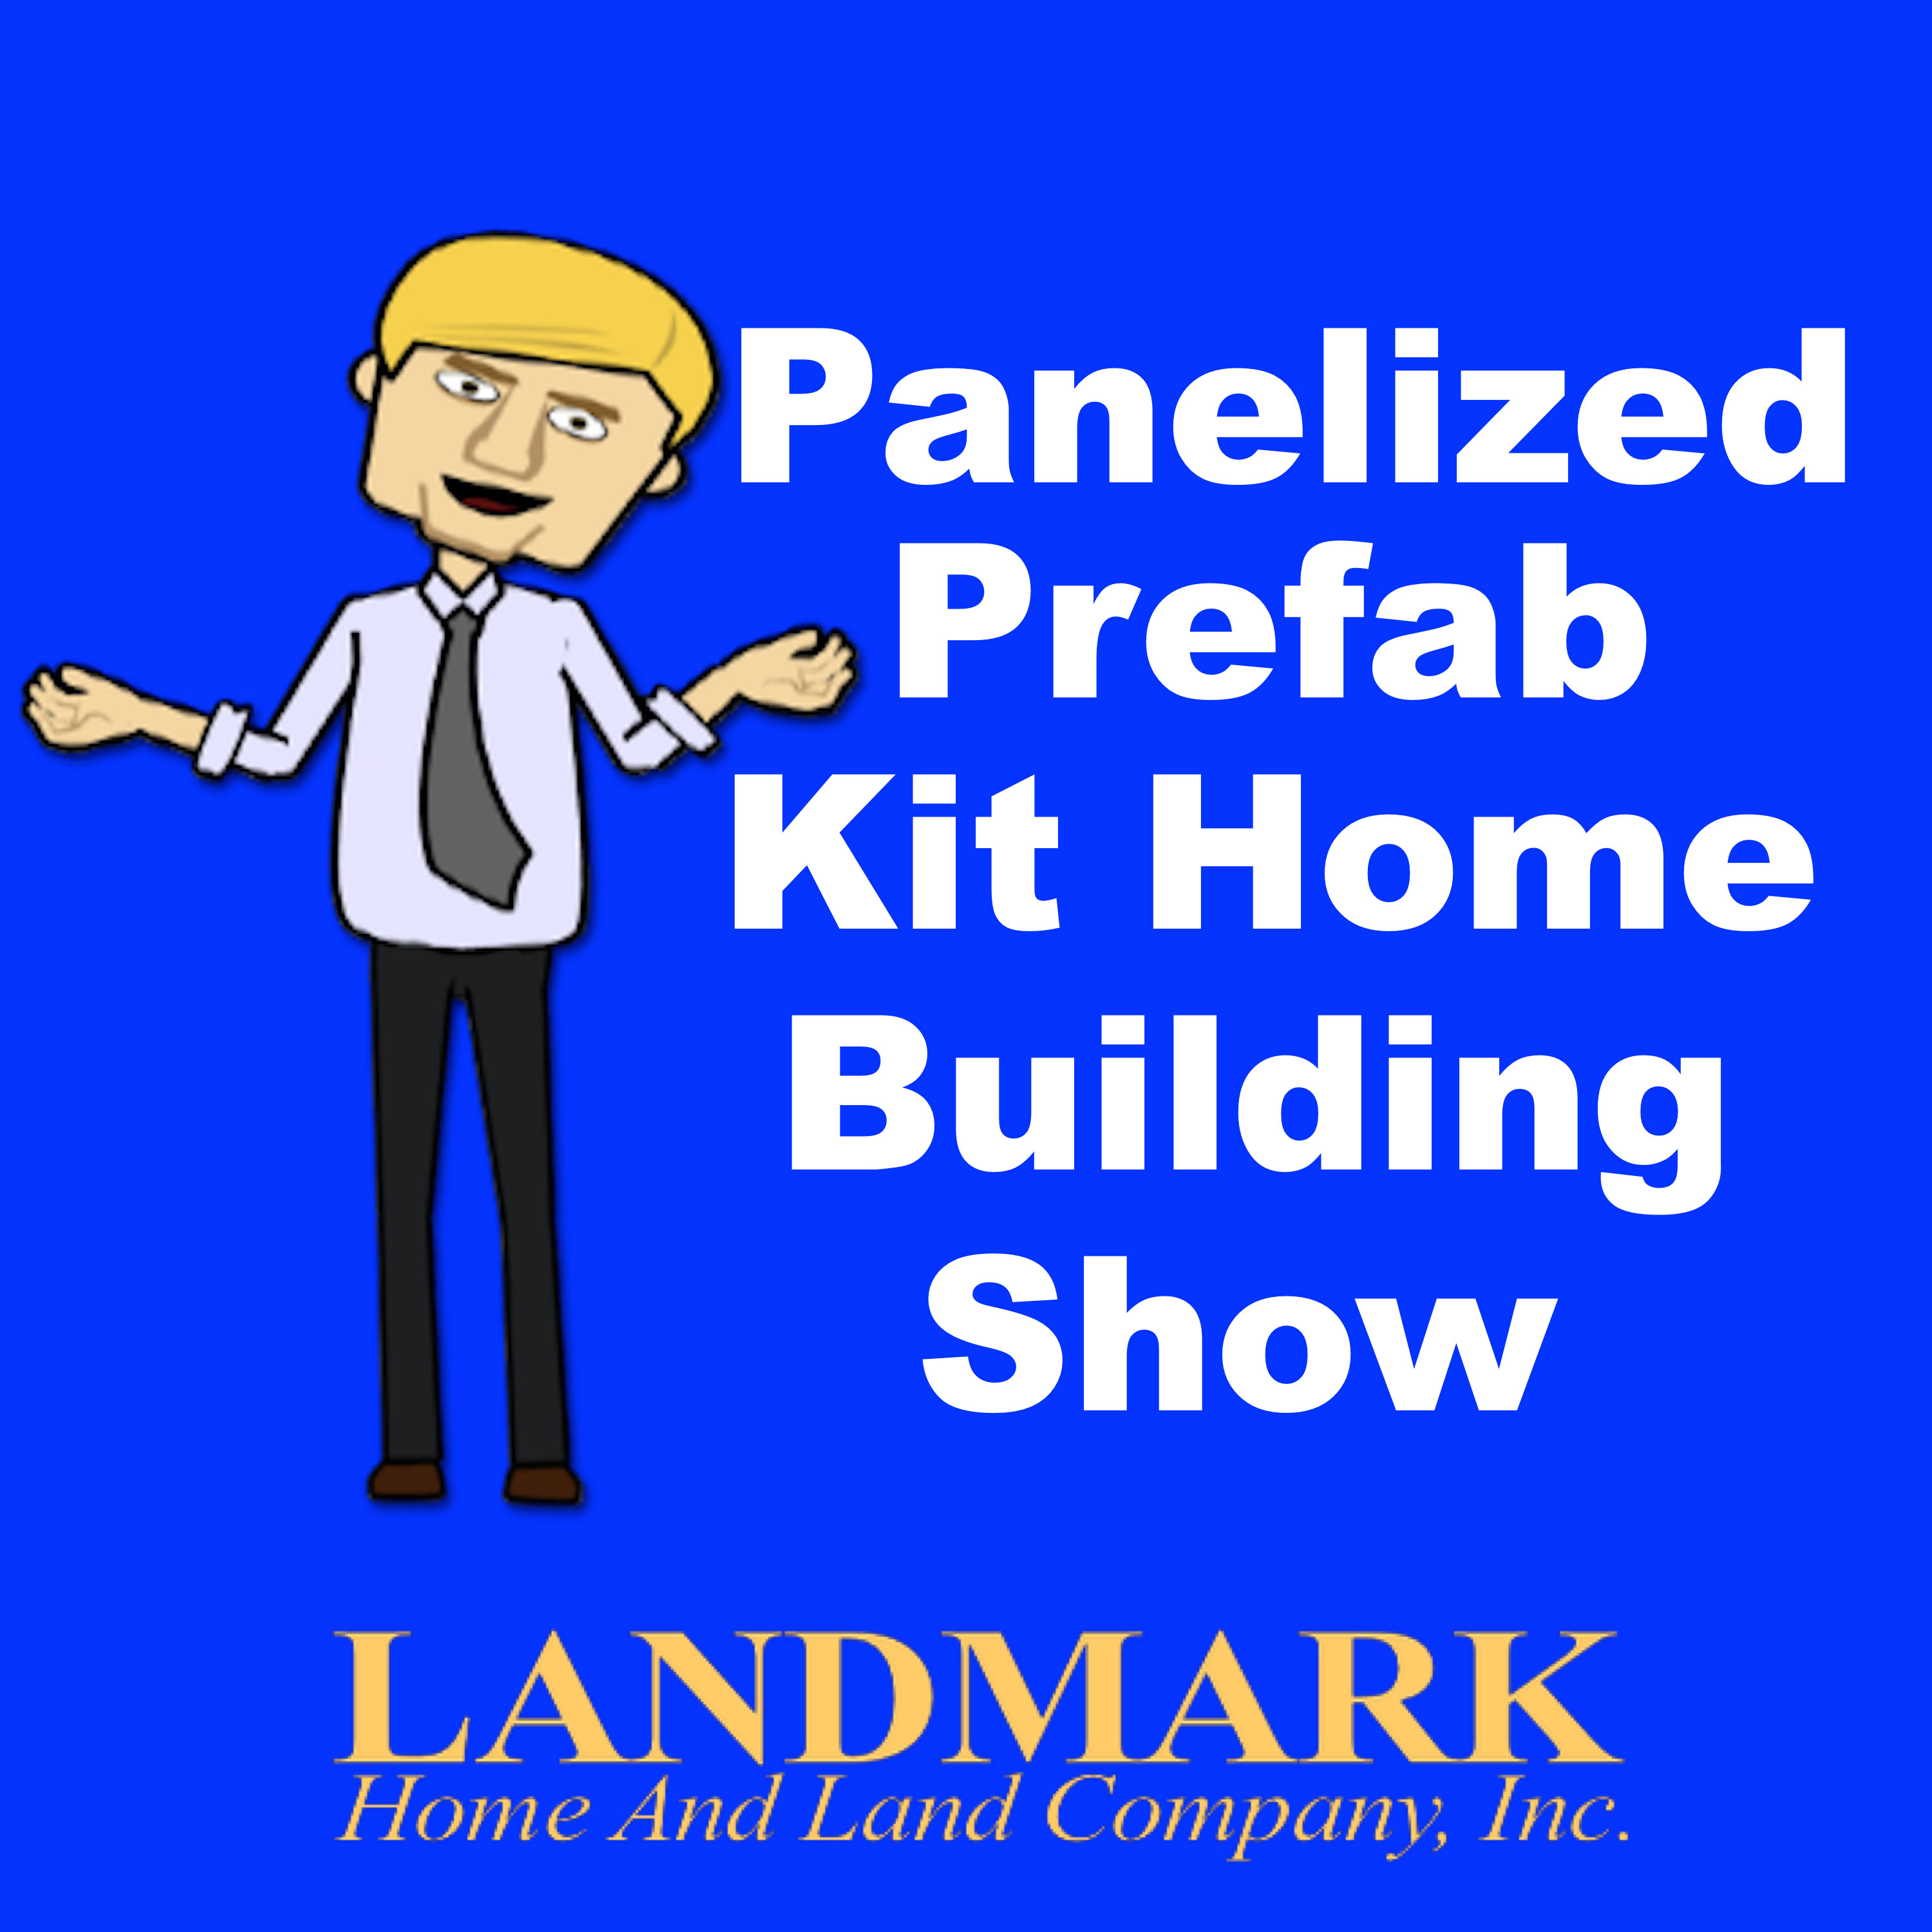 Panelized Prefab Kit Home Building Show